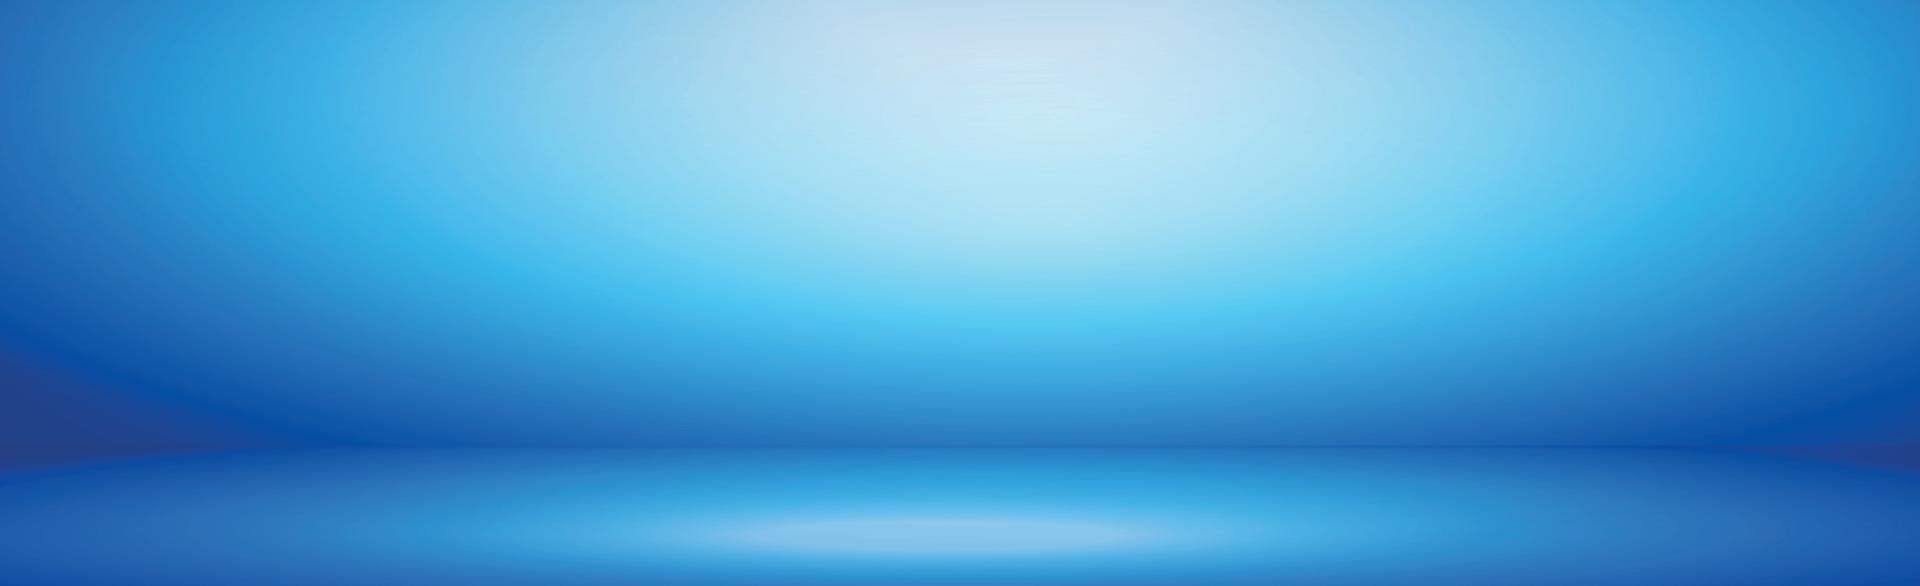 blå panoramastudiobakgrund med vitt sken vektor